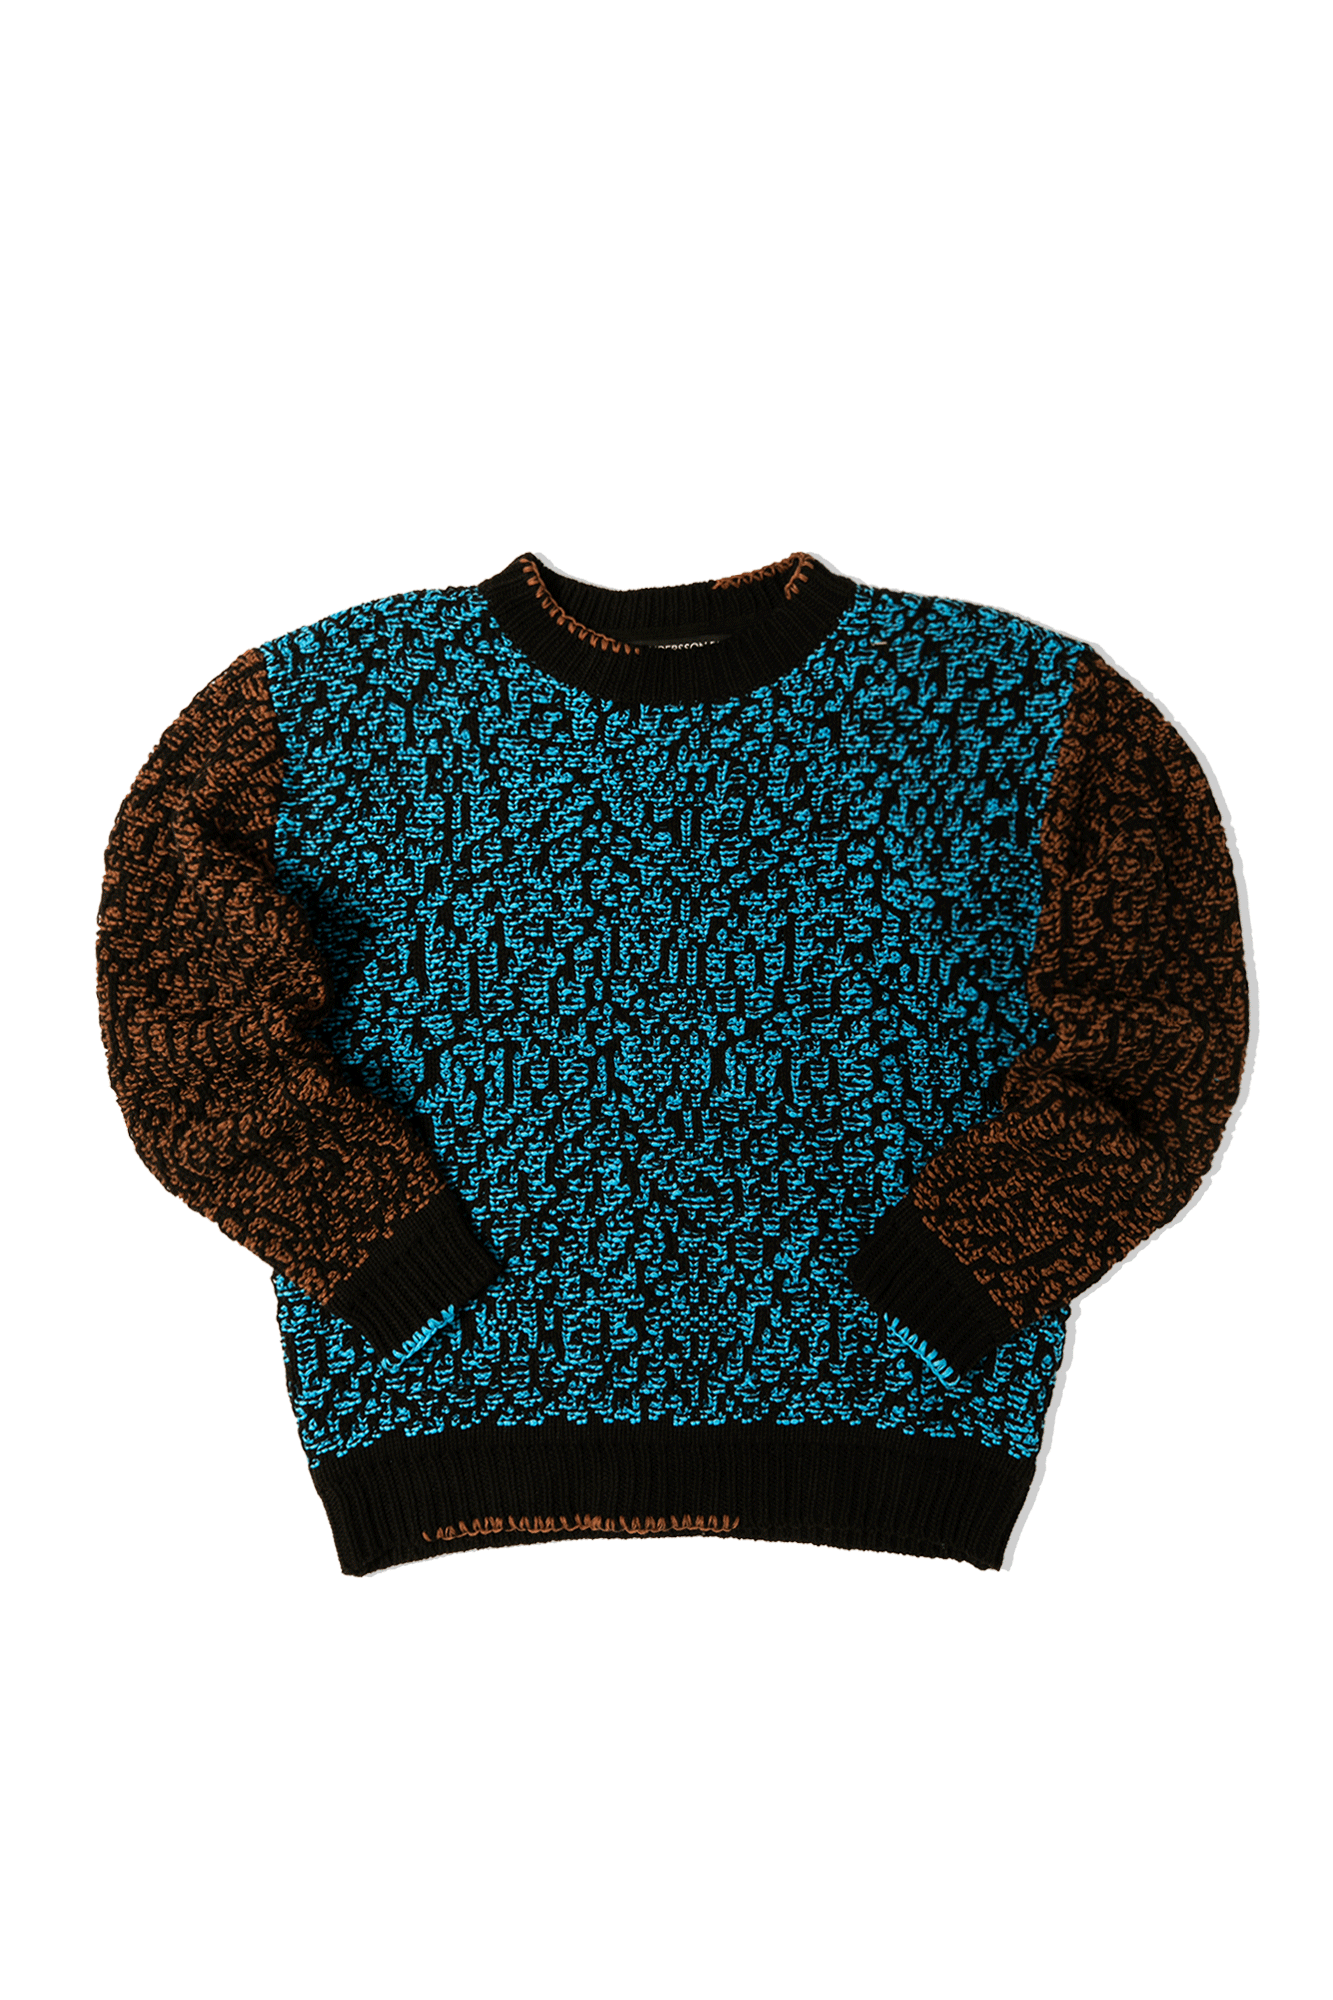 オンラインストア新作 walenode Tundra Bluefox sweater 別注 - トップス